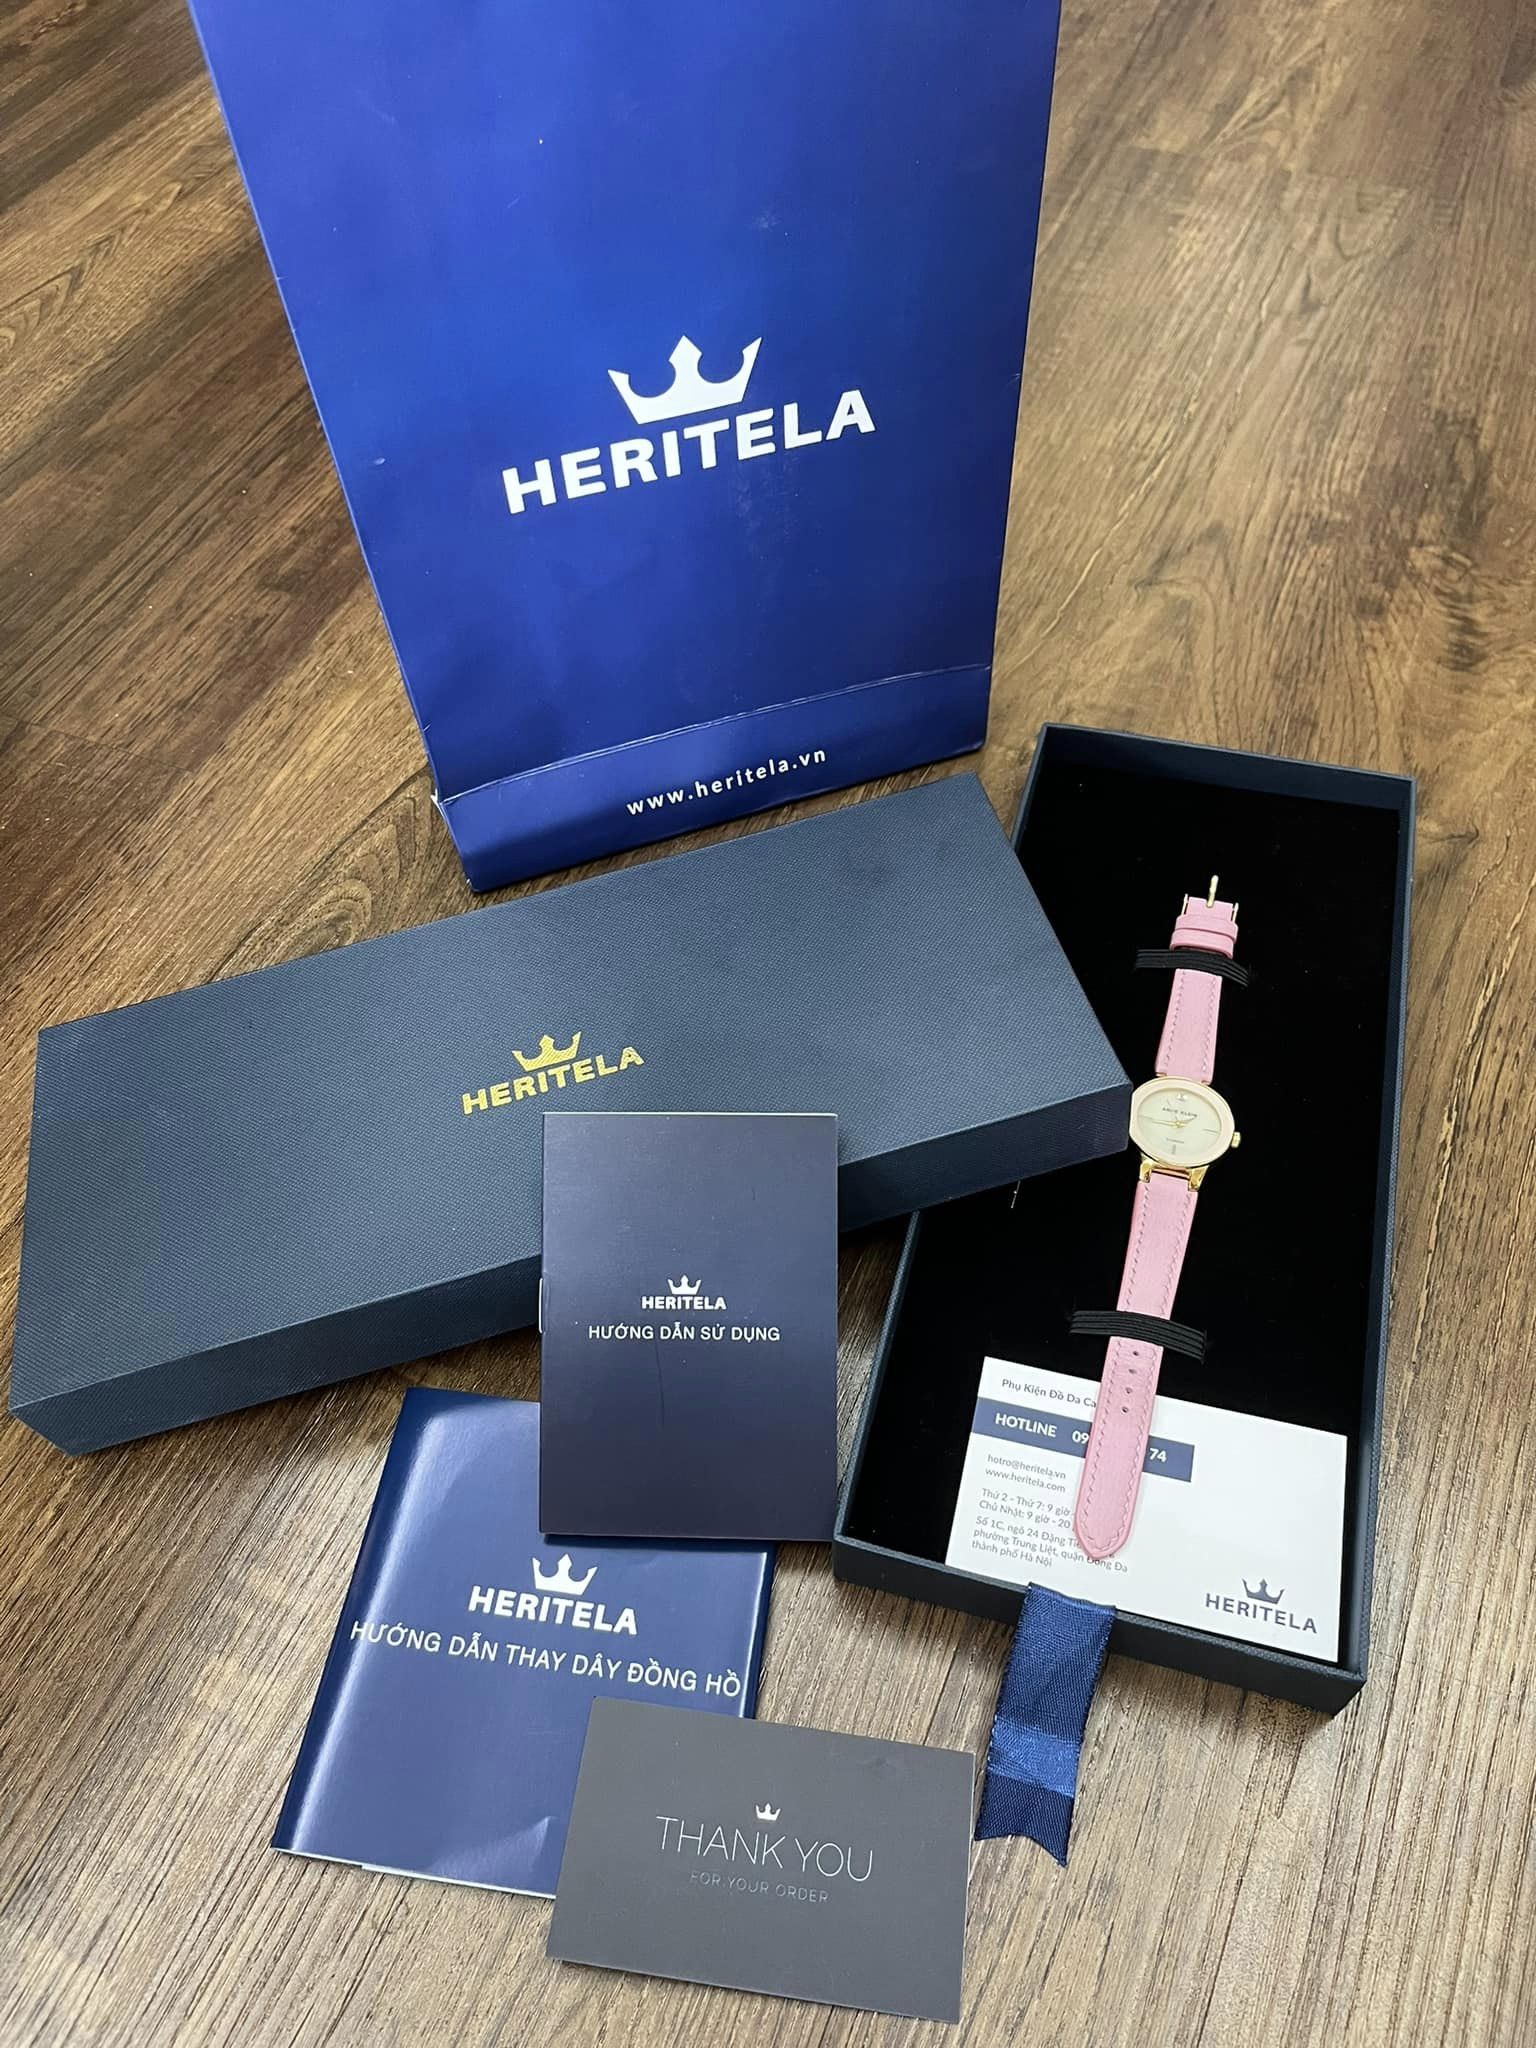 Đánh giá khách hàng về Heritela